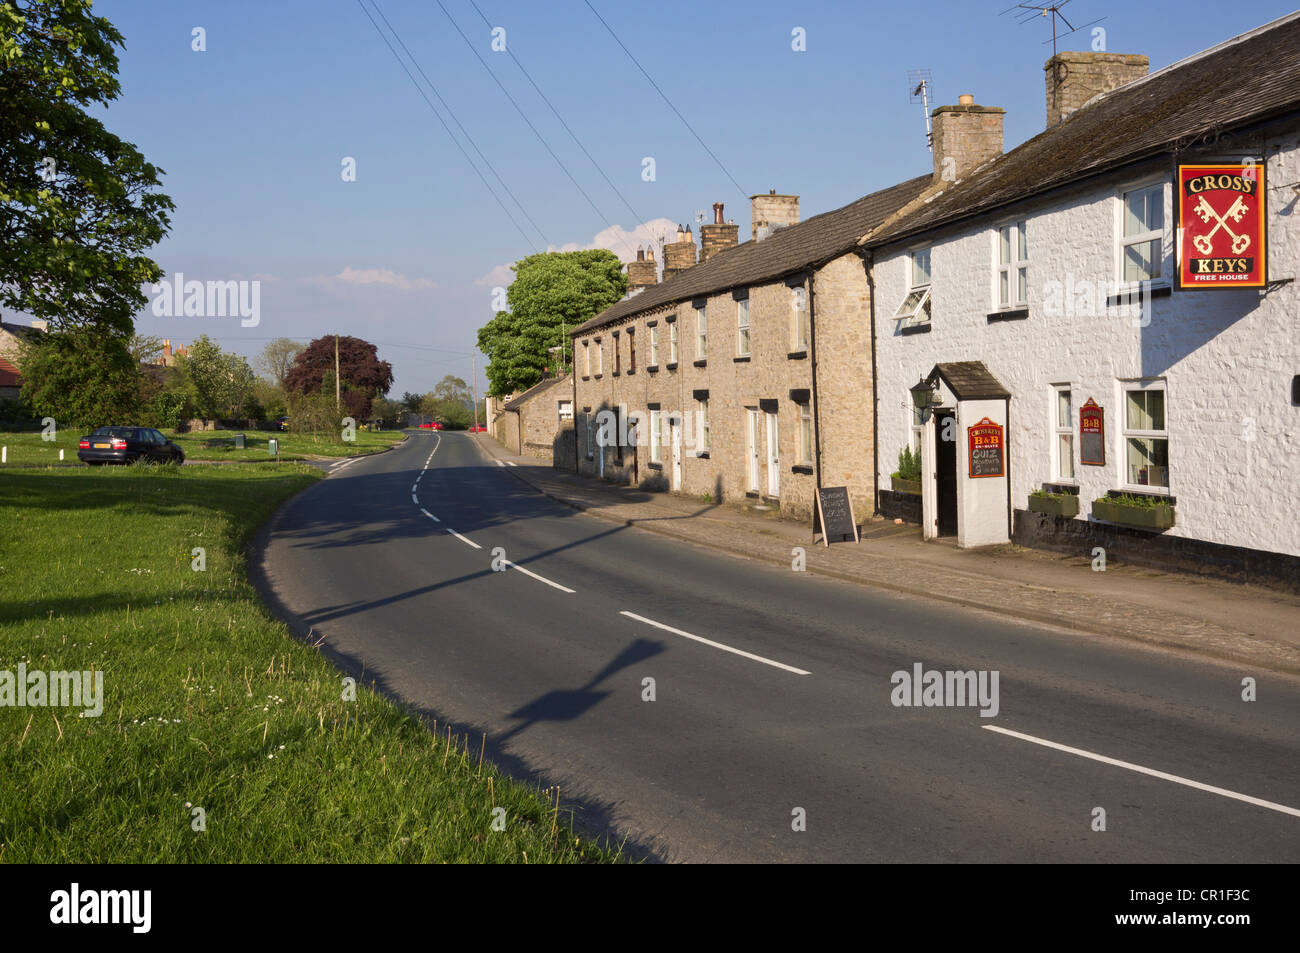 Bellerby, vicino Leyburn, North Yorkshire. La strada attraverso il villaggio verde con pub ( la Cross Keys) e case. Foto Stock